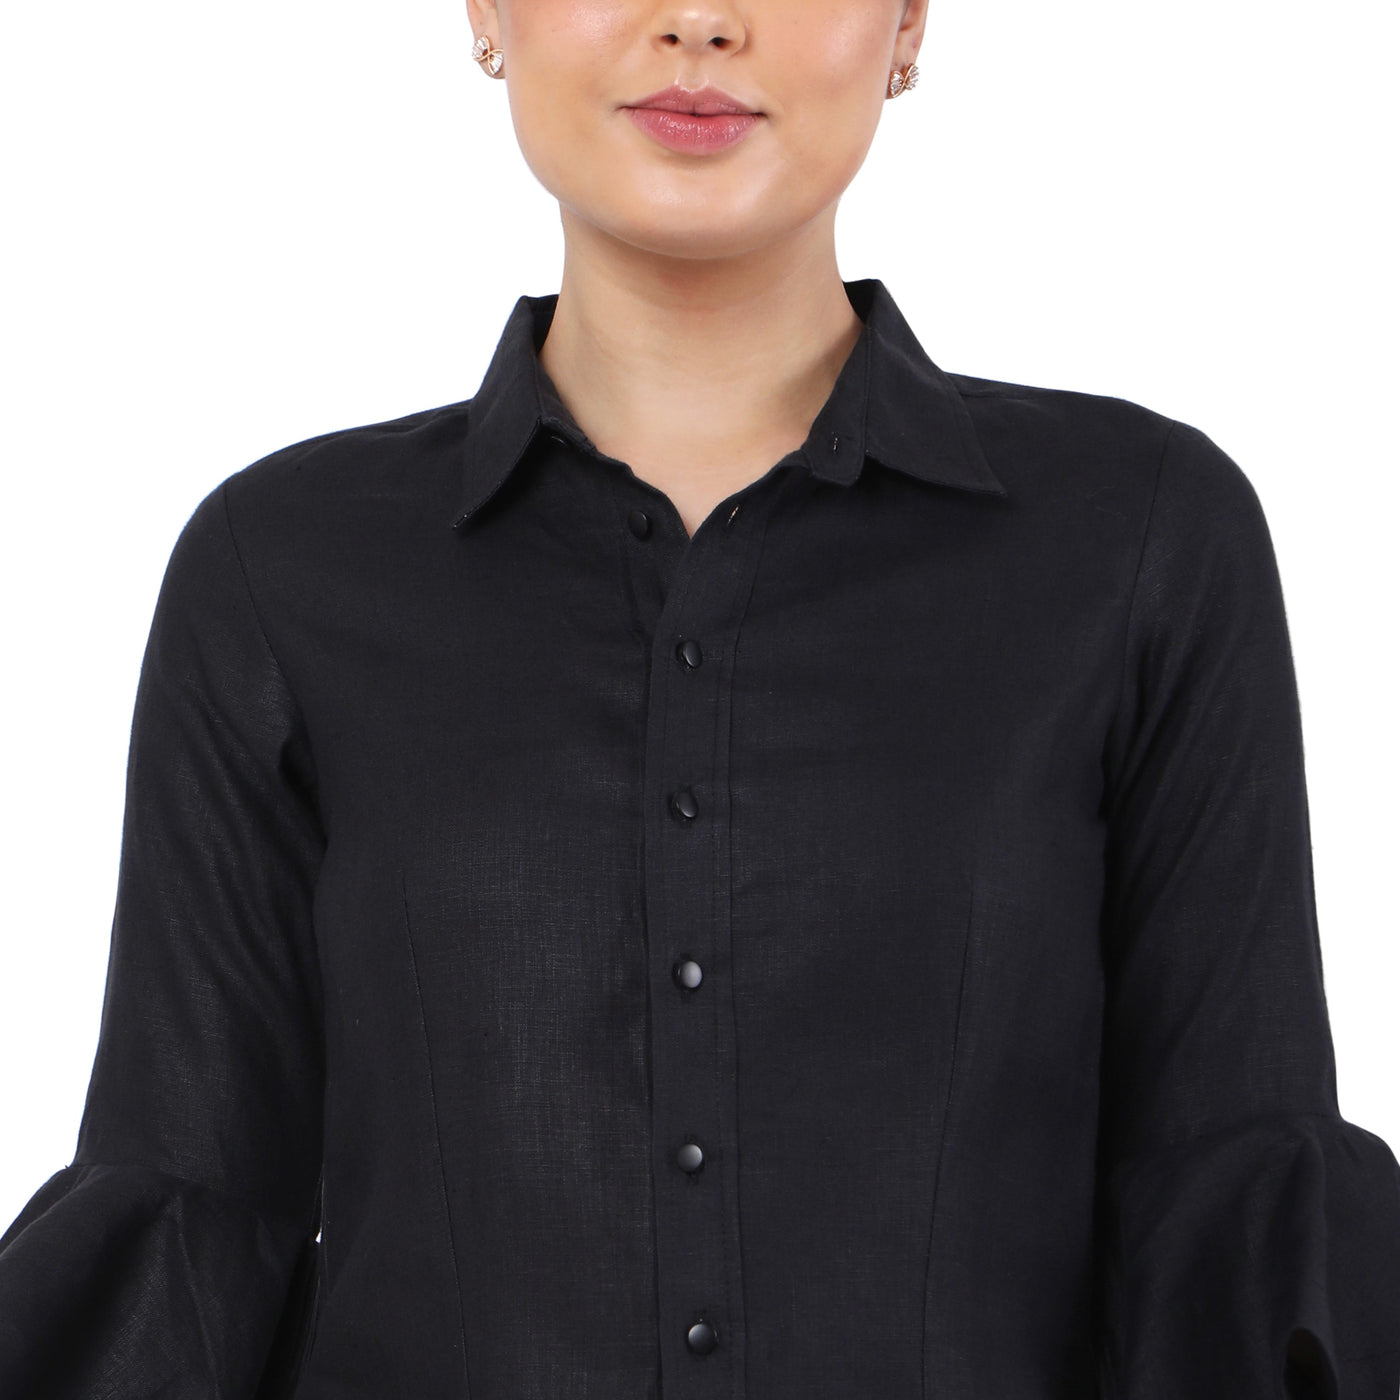 Women's Hemp Black Ruffled Sleeves Shirt